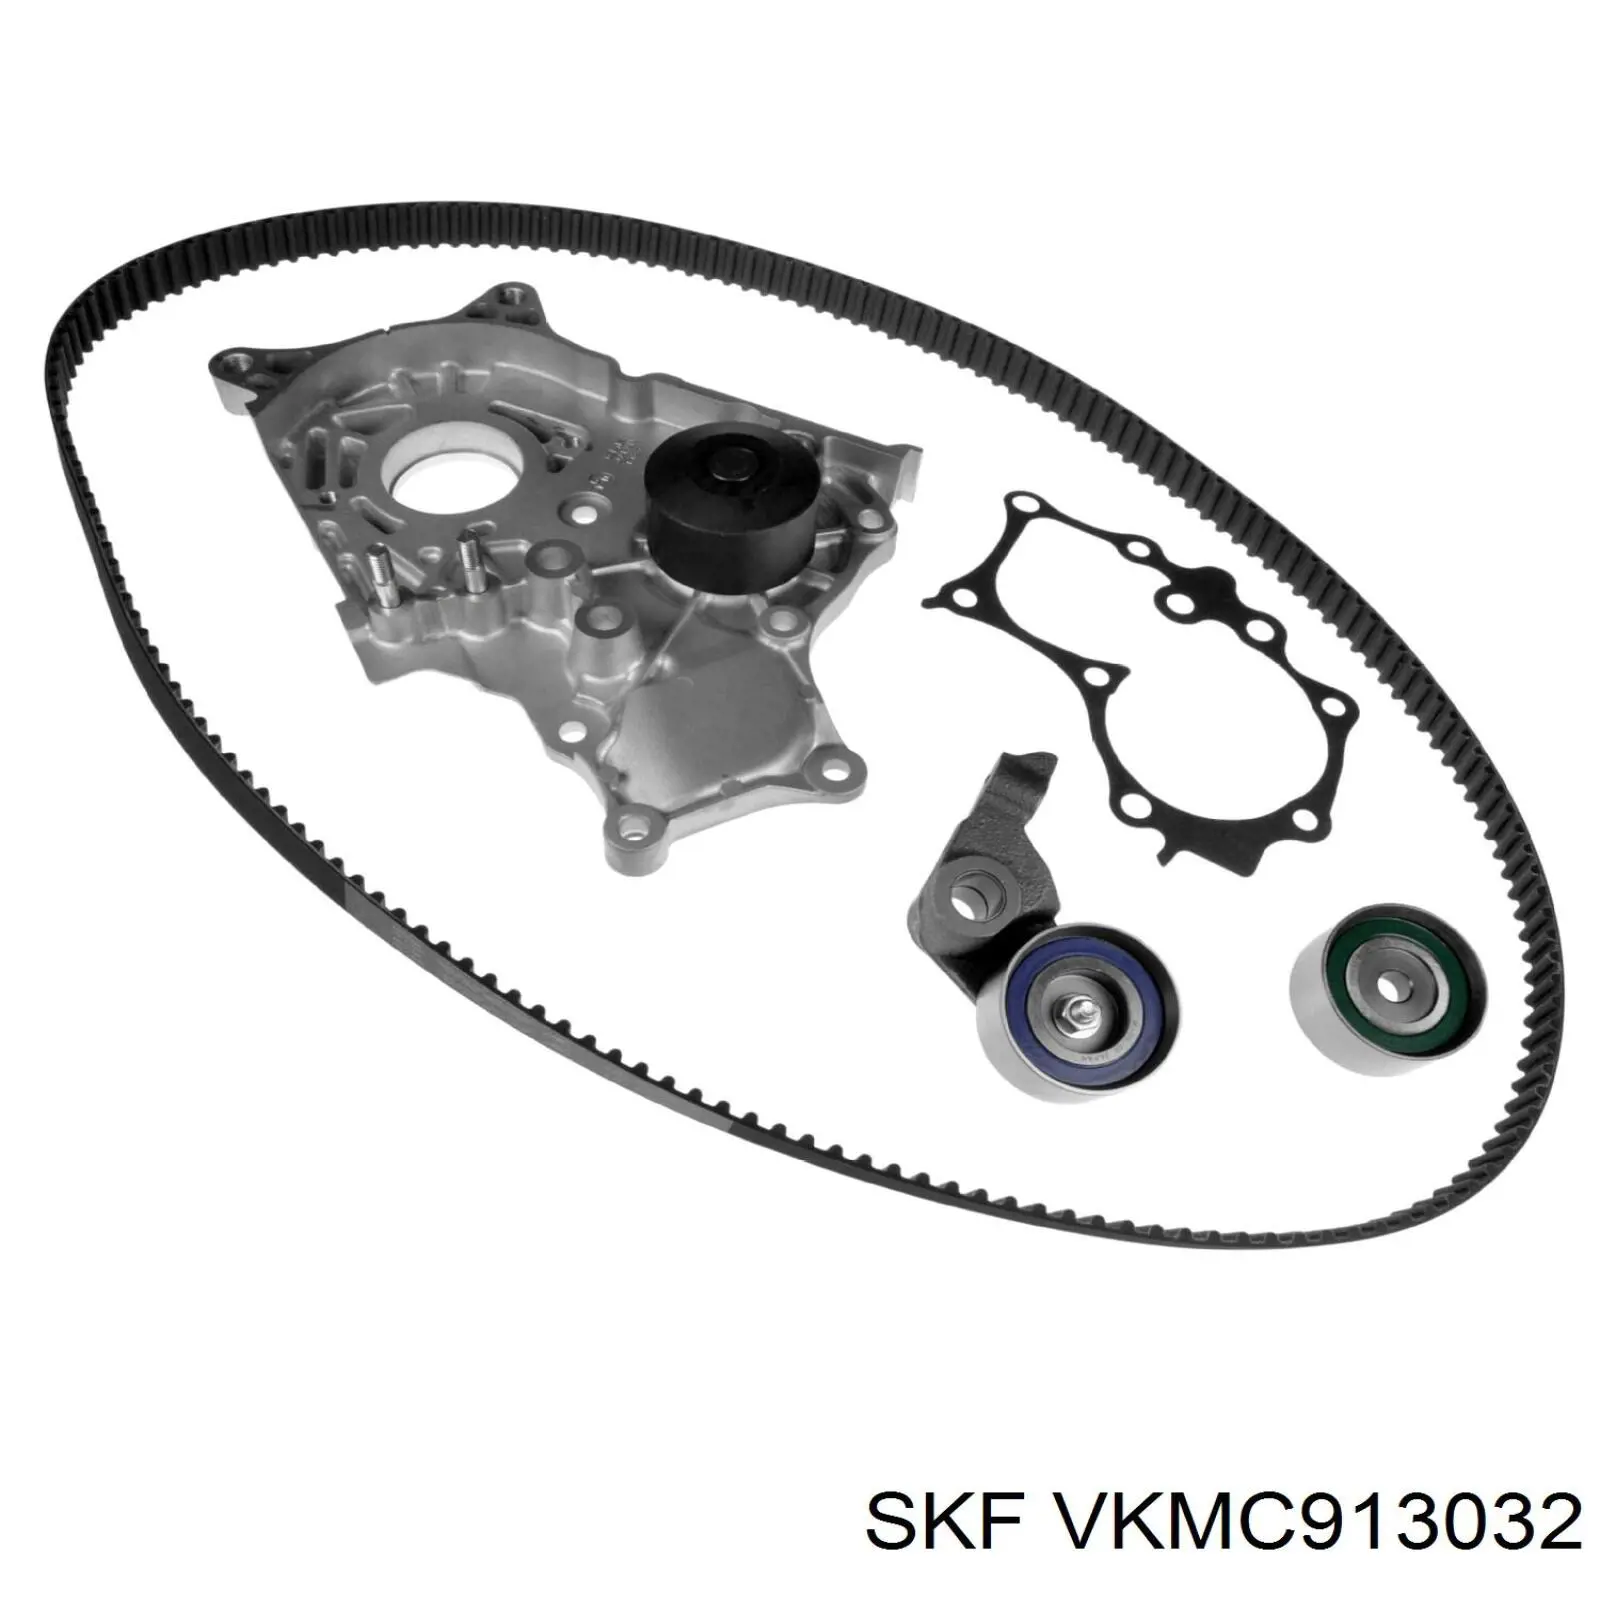 VKMC913032 SKF kit de correa de distribución